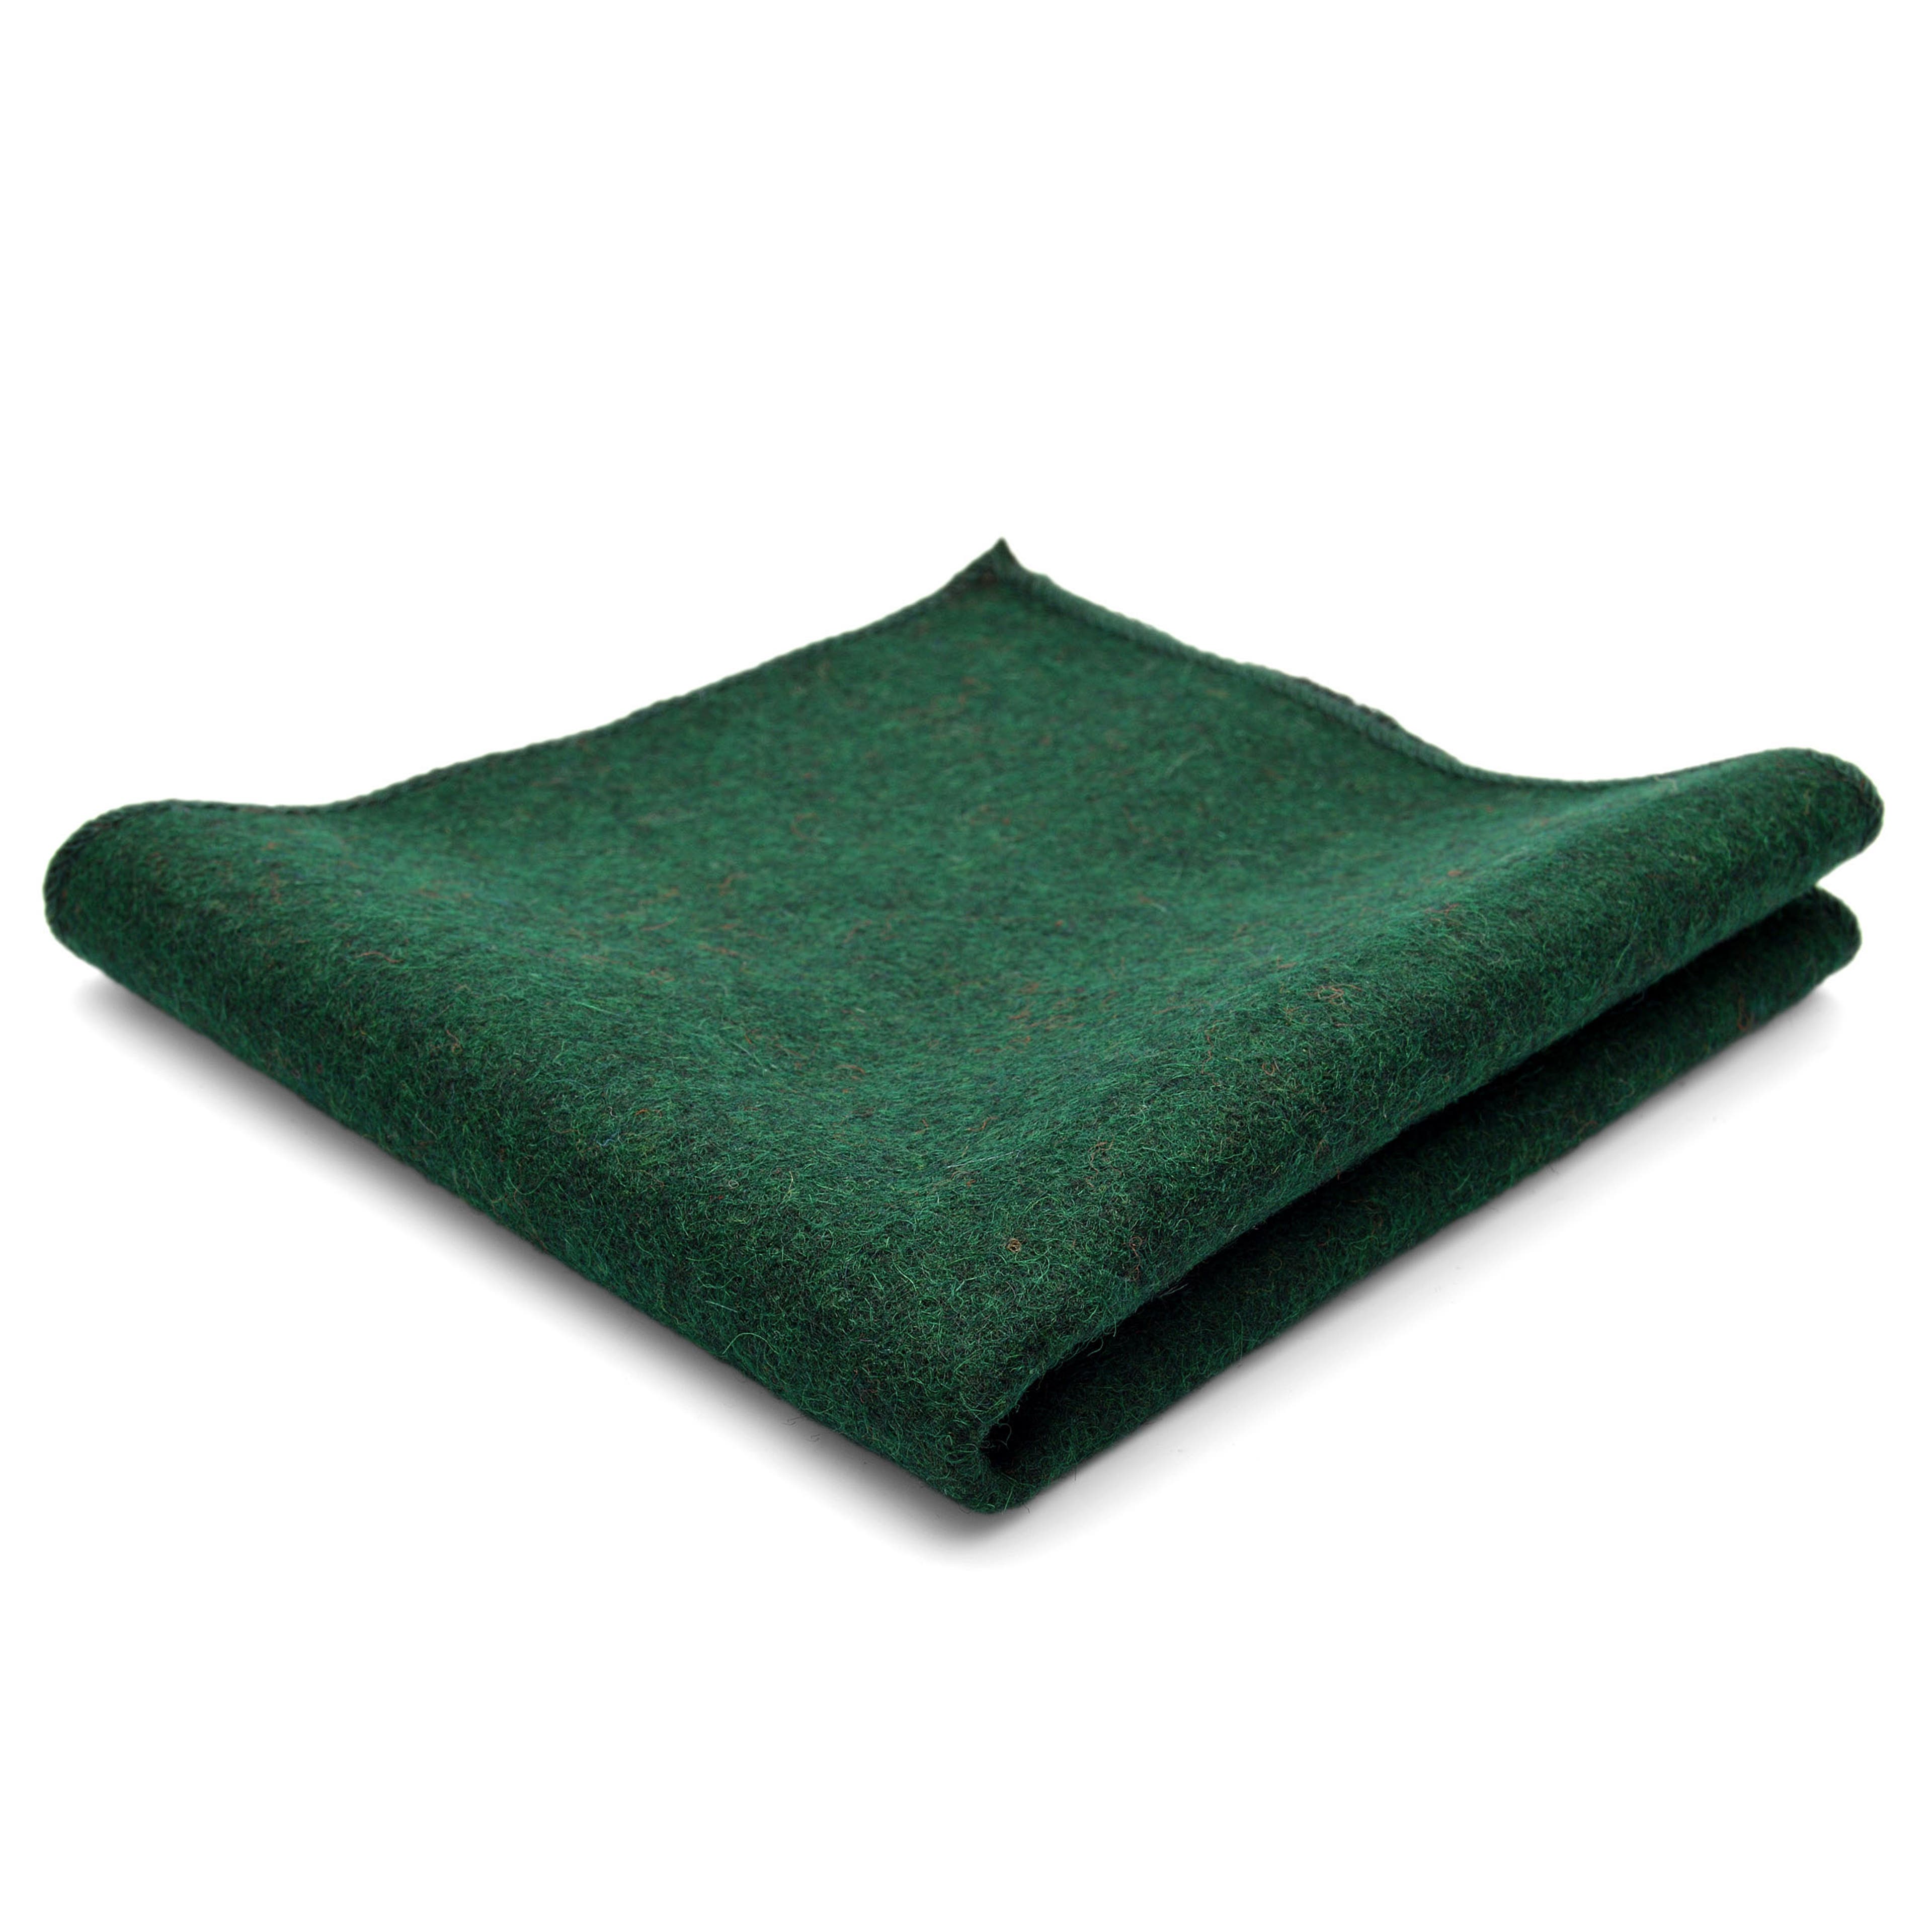 Grünes handgefertigtes Einstecktuch aus Wolle